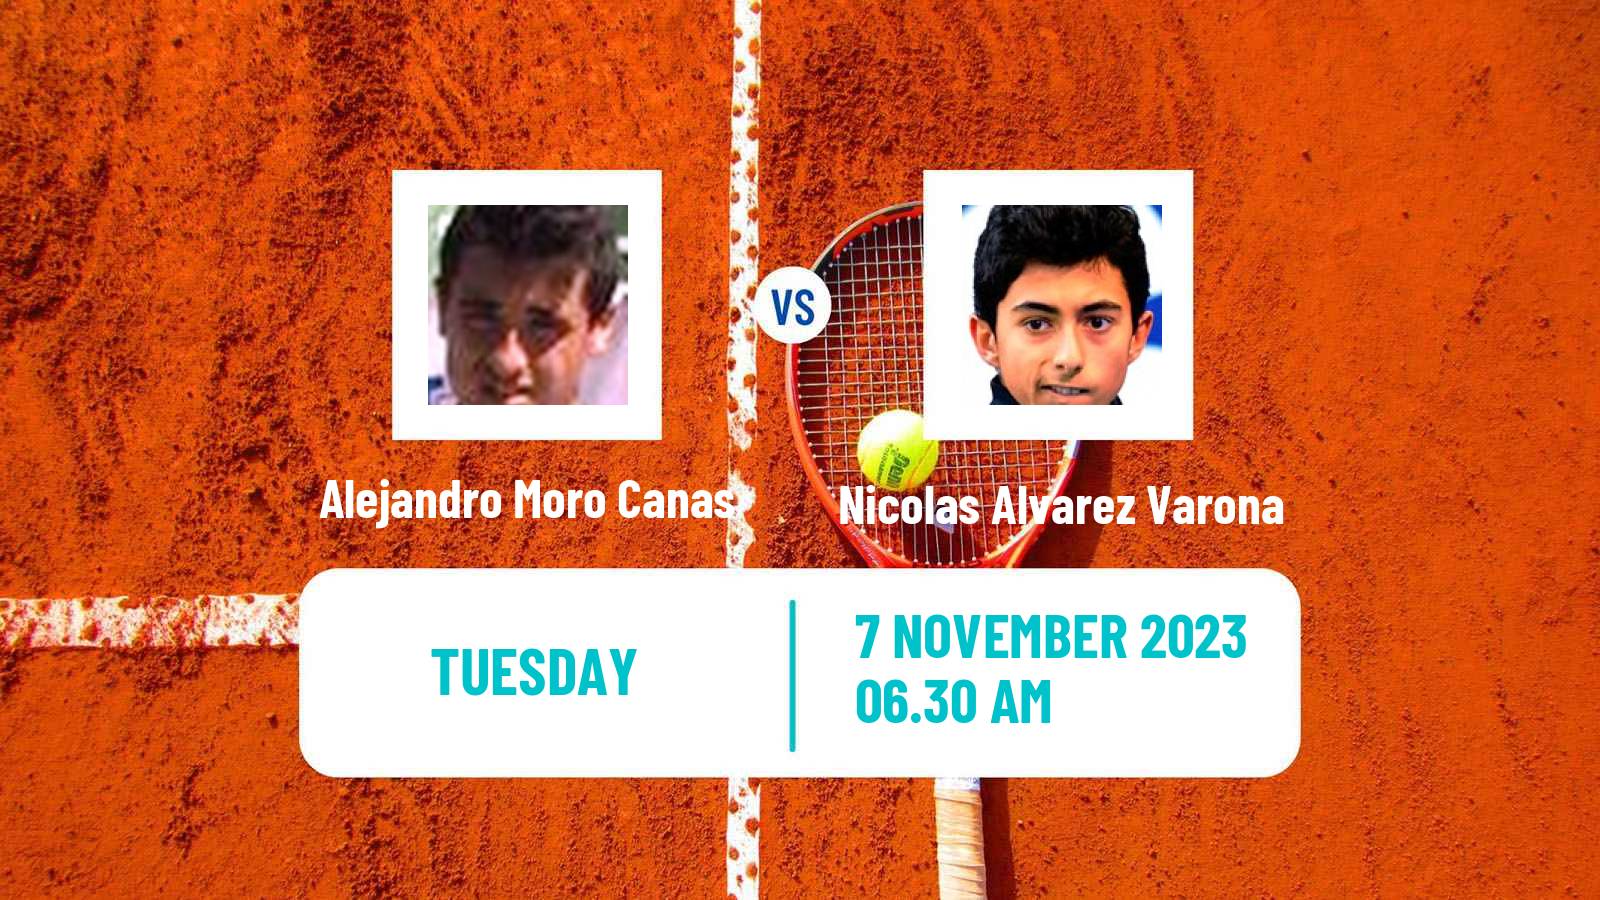 Tennis ITF M25 Benicarlo Men Alejandro Moro Canas - Nicolas Alvarez Varona